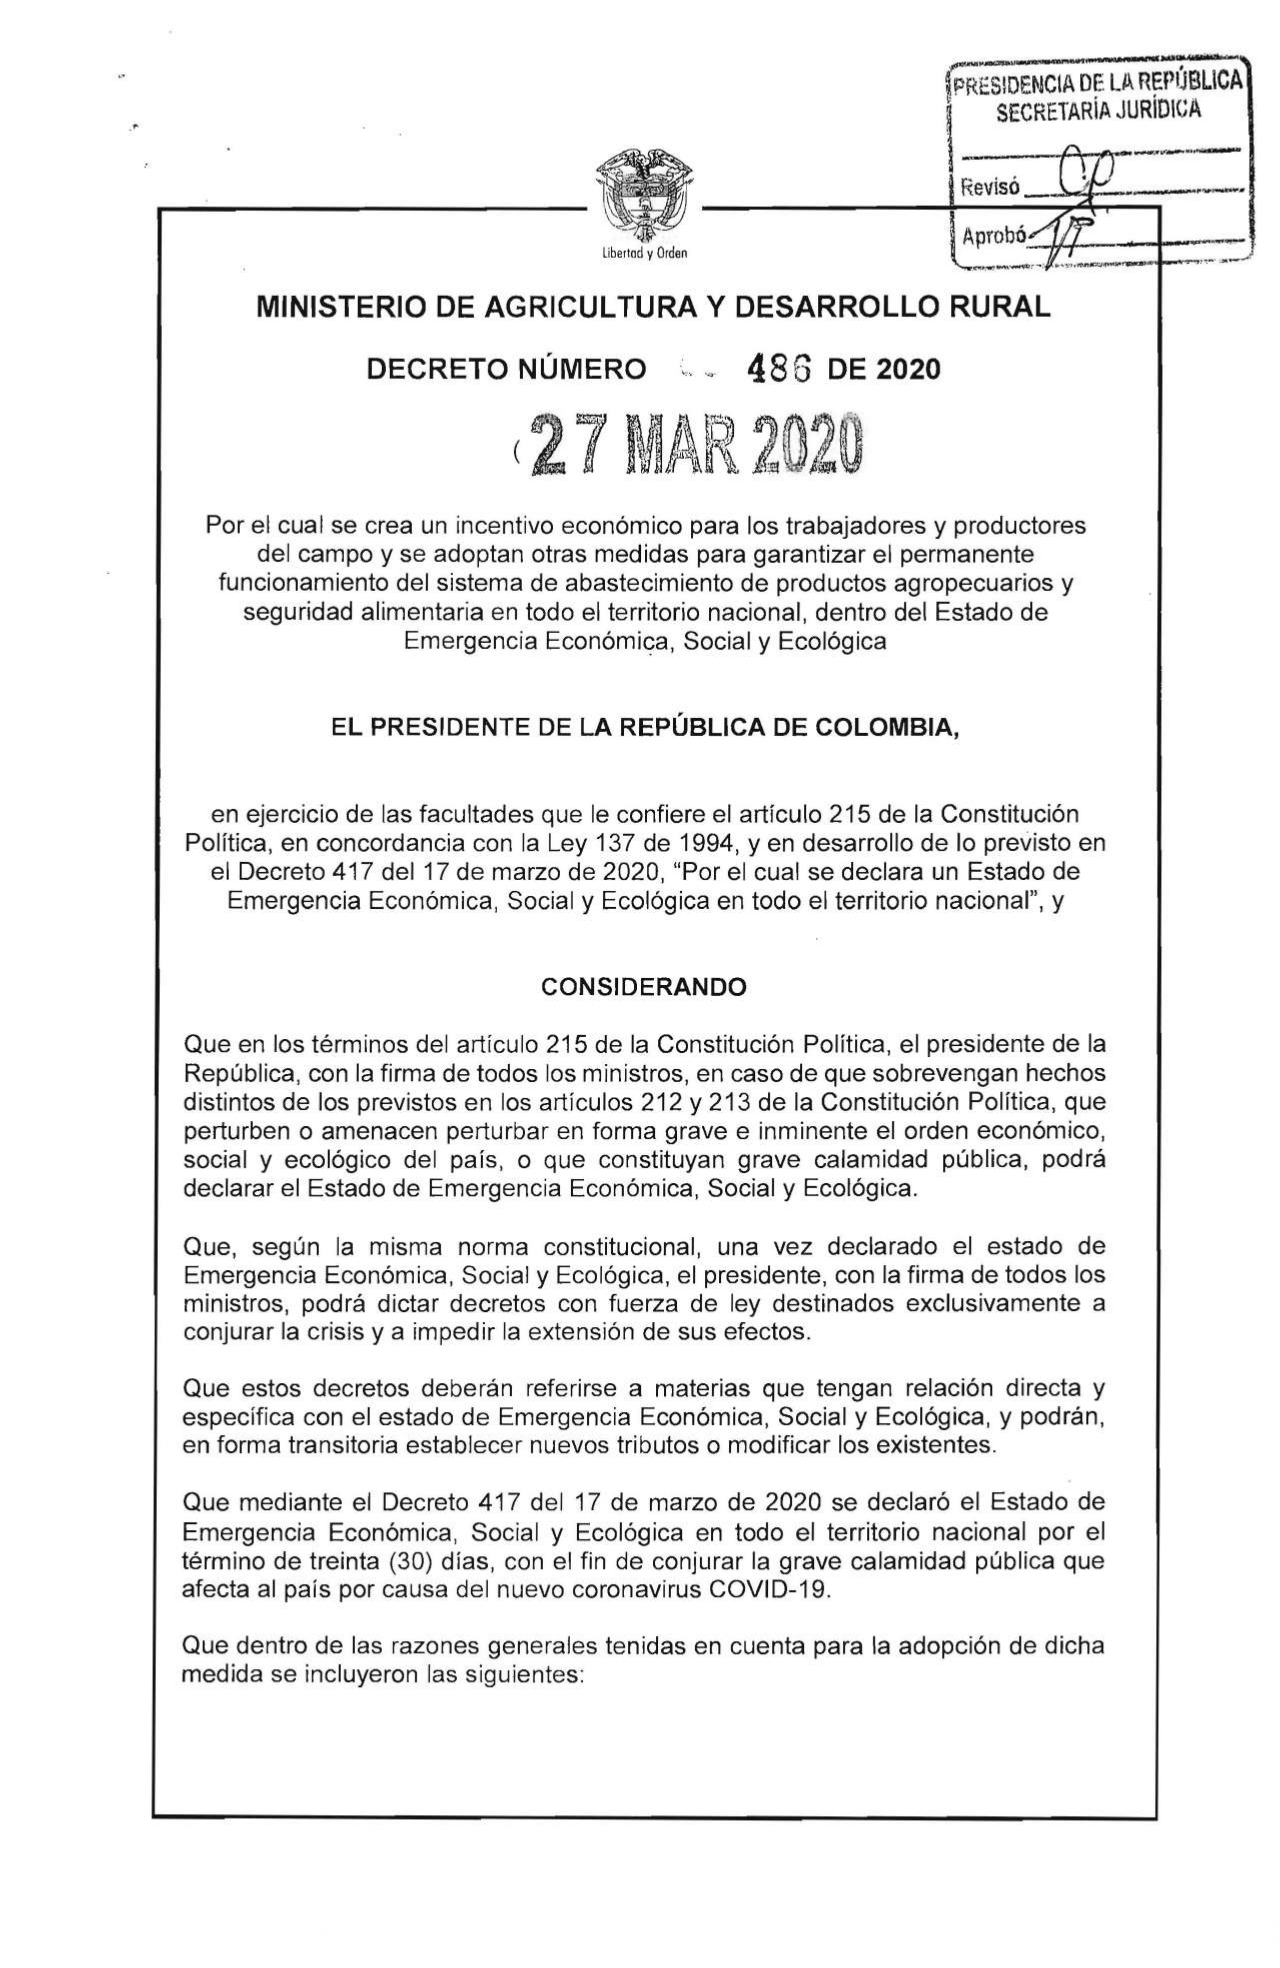 Decreto 486 del 27 de Marzo de 2020 otorga incentivos a trabajadores y productores del campo.